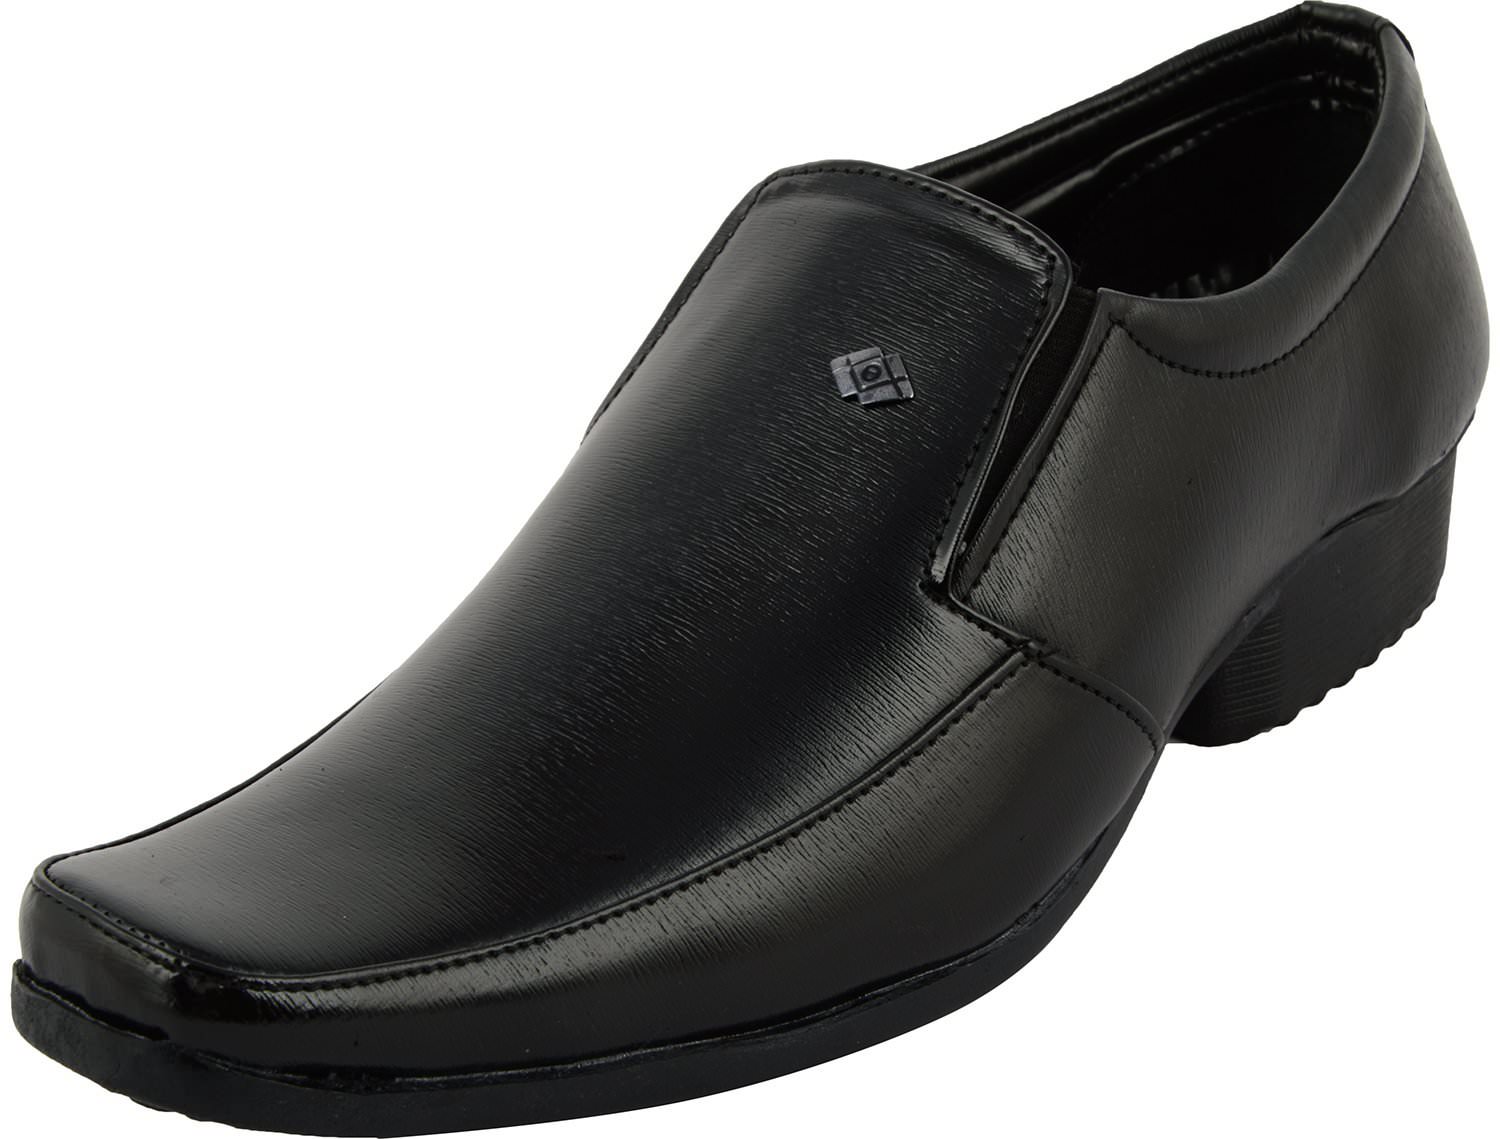 shoe sense black synthetic formal shoes